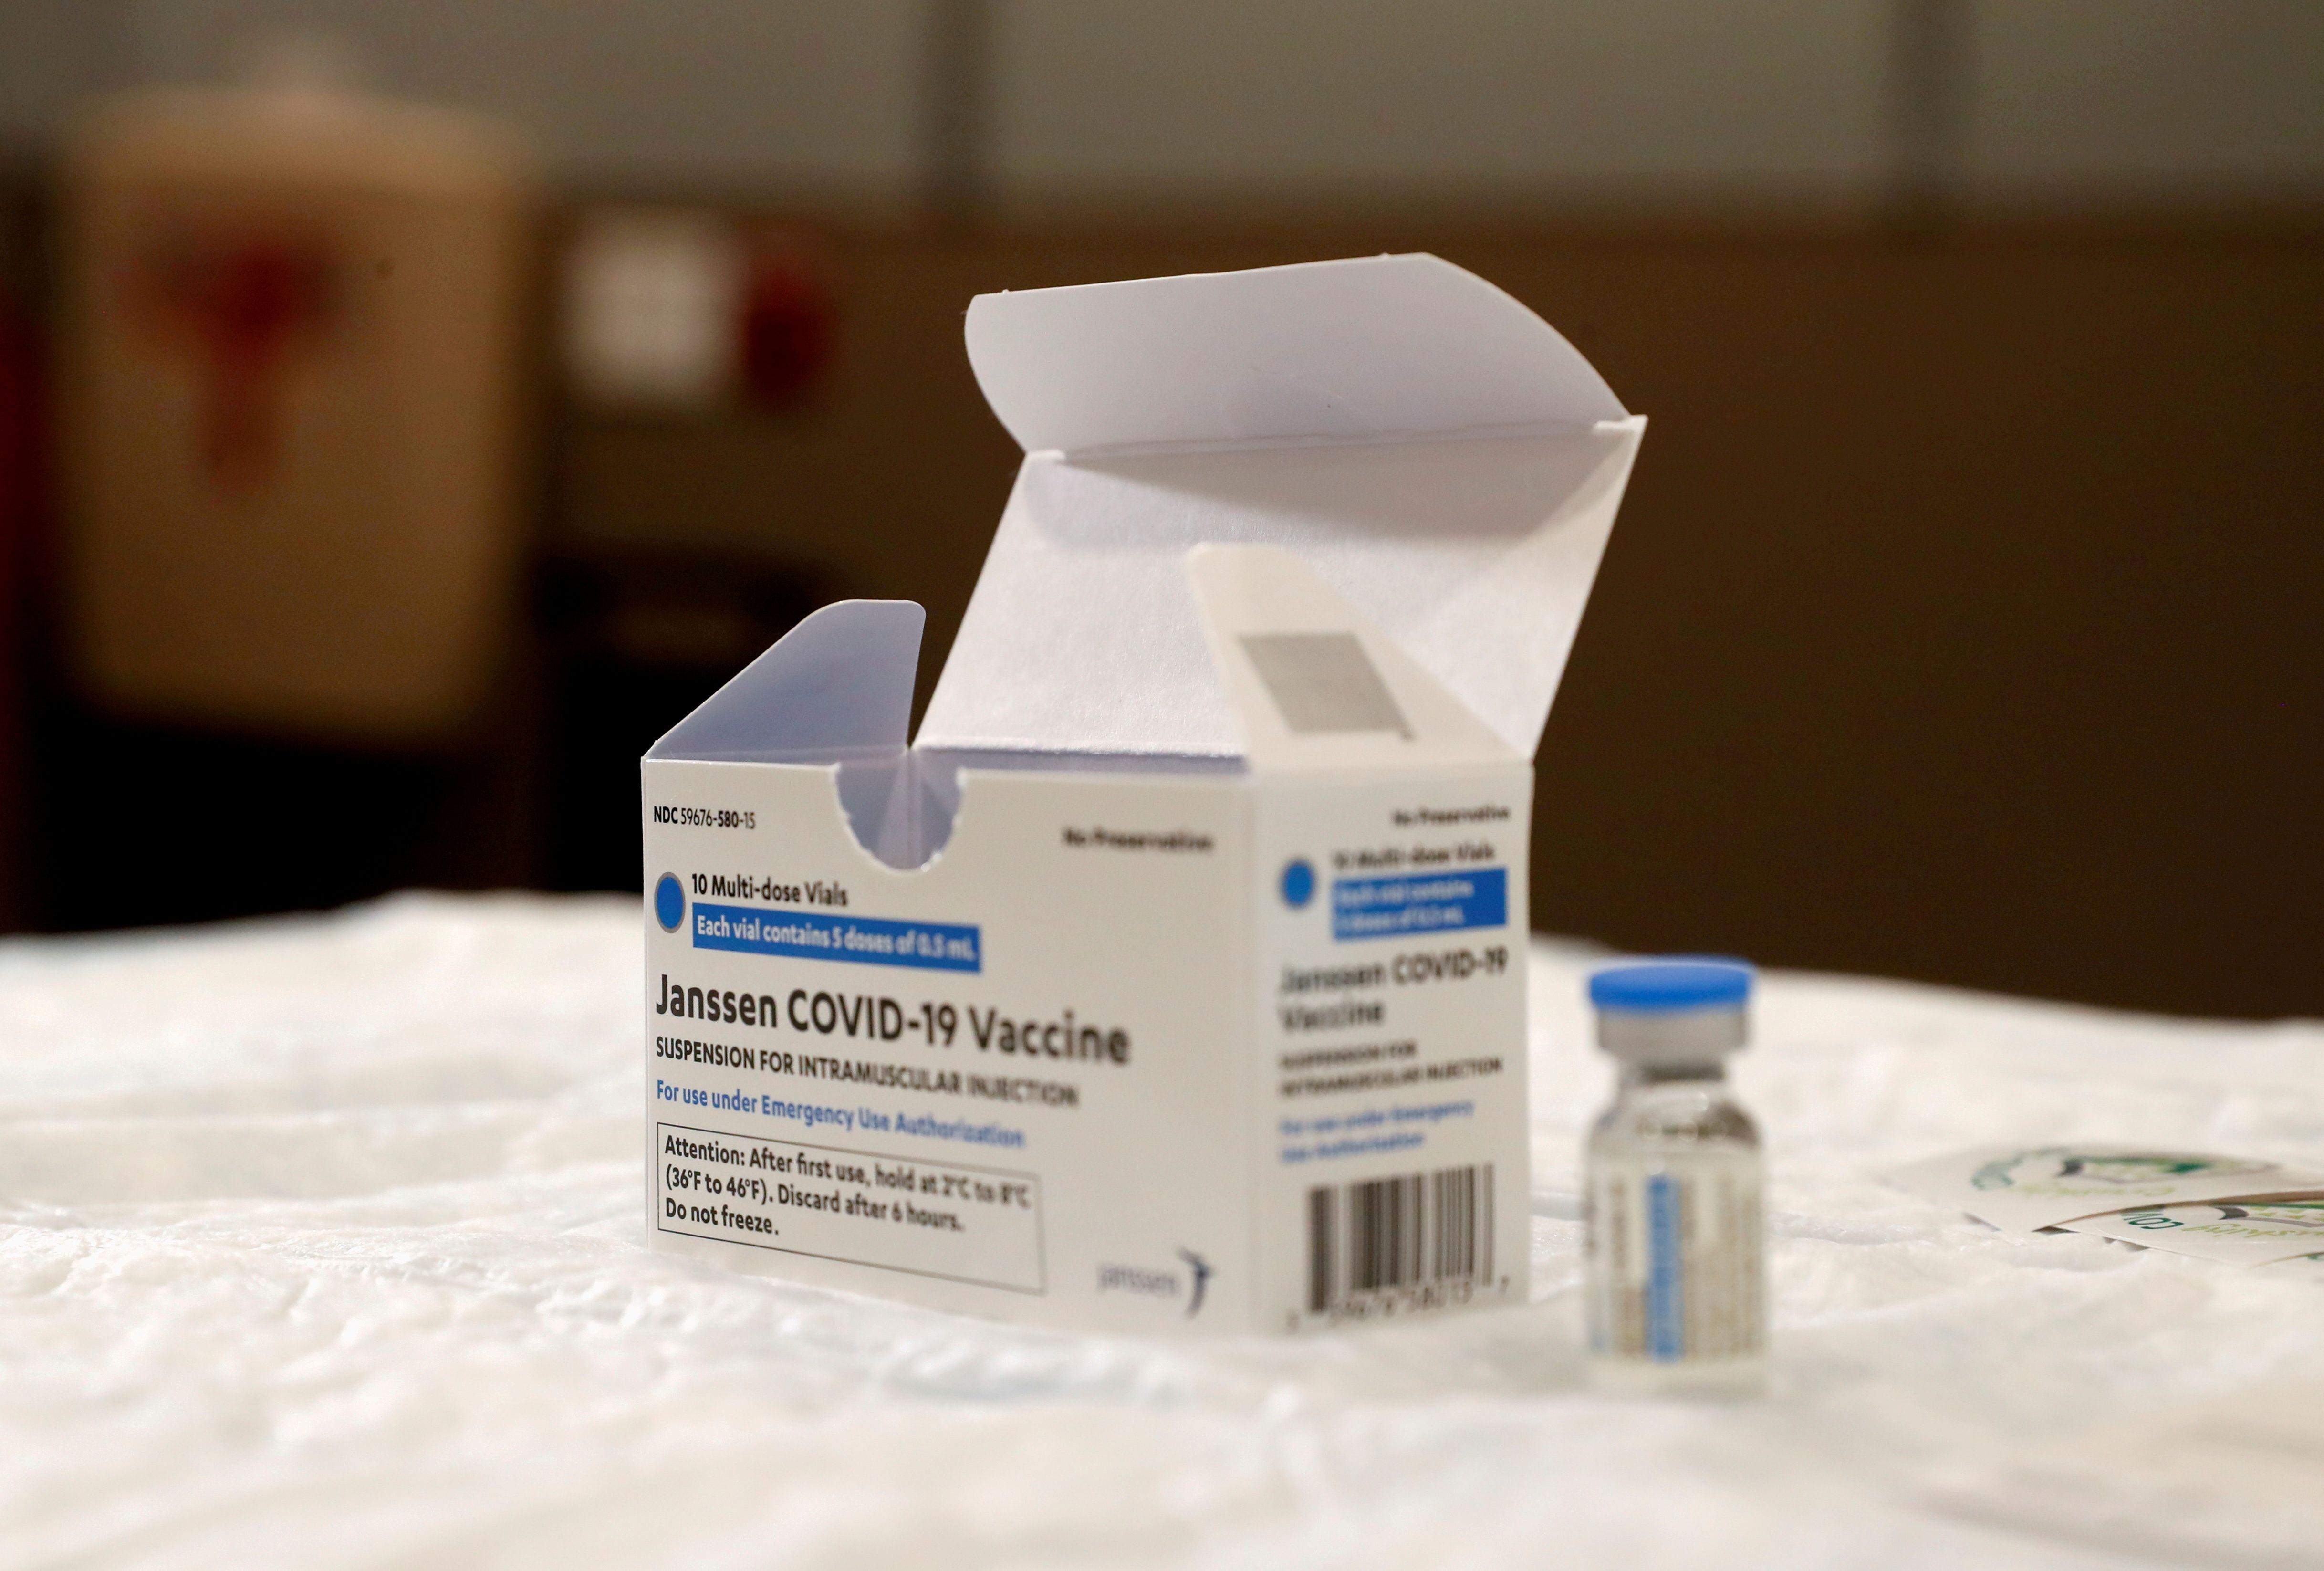 La vacuna Johnson & Johnson ha sido suspendida por la FDA esta semana (REUTERS/Shannon Stapleton/File Photo)